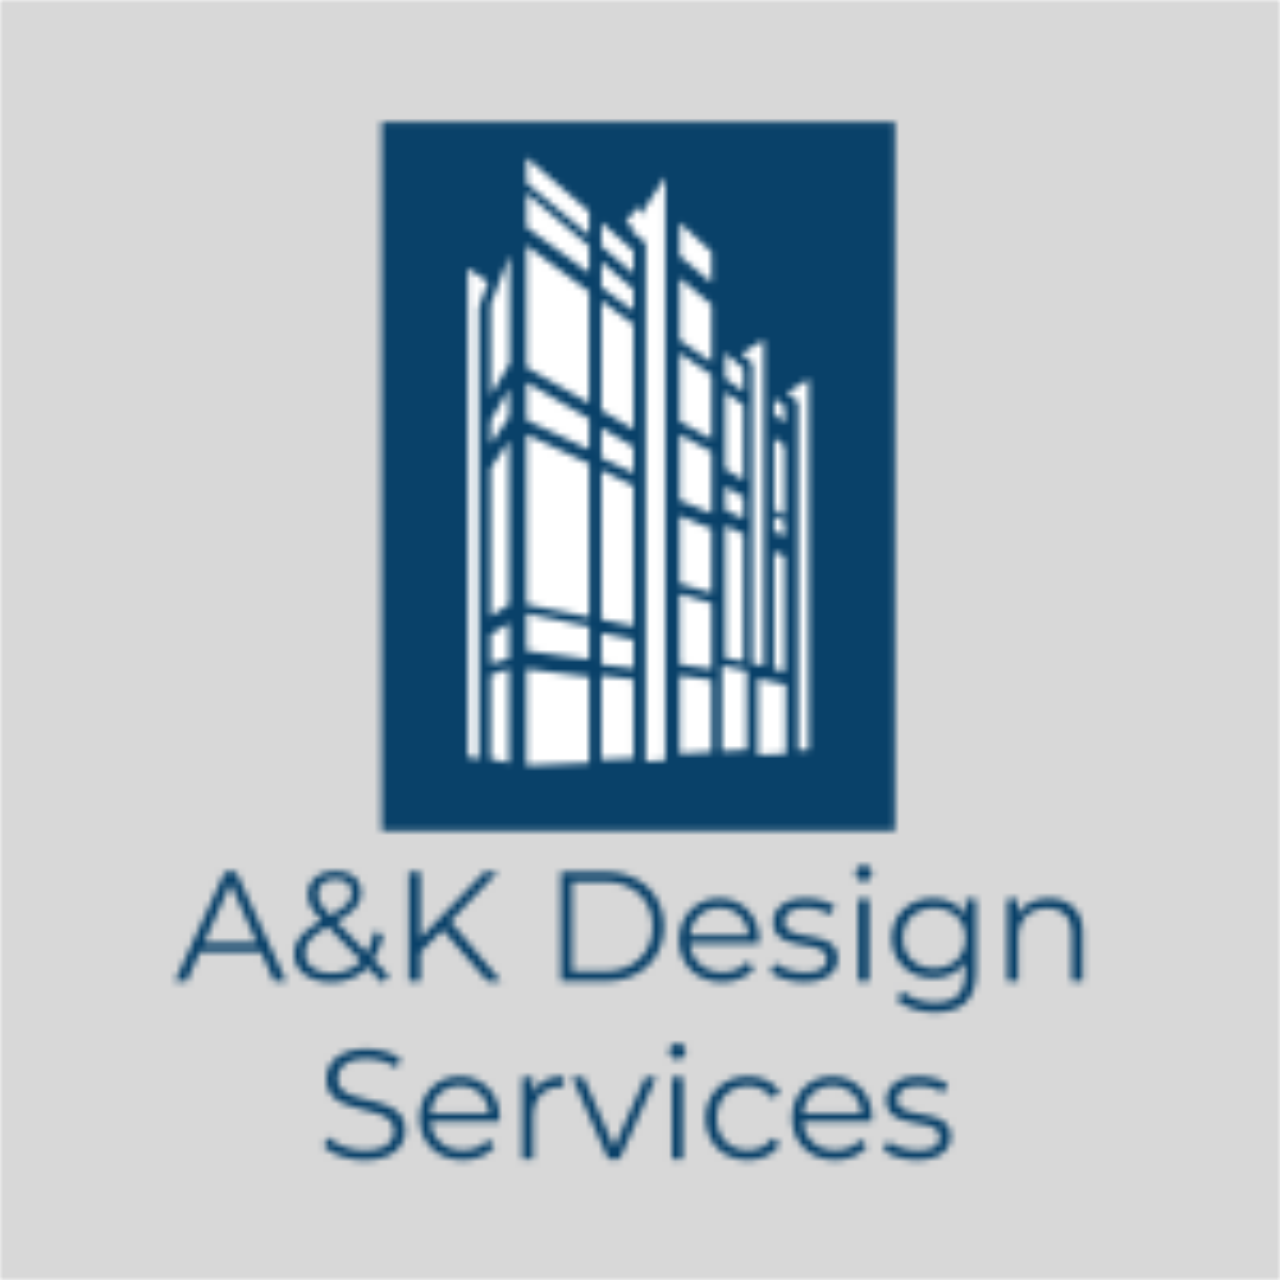 A&K Design Services, LLC.'s web page